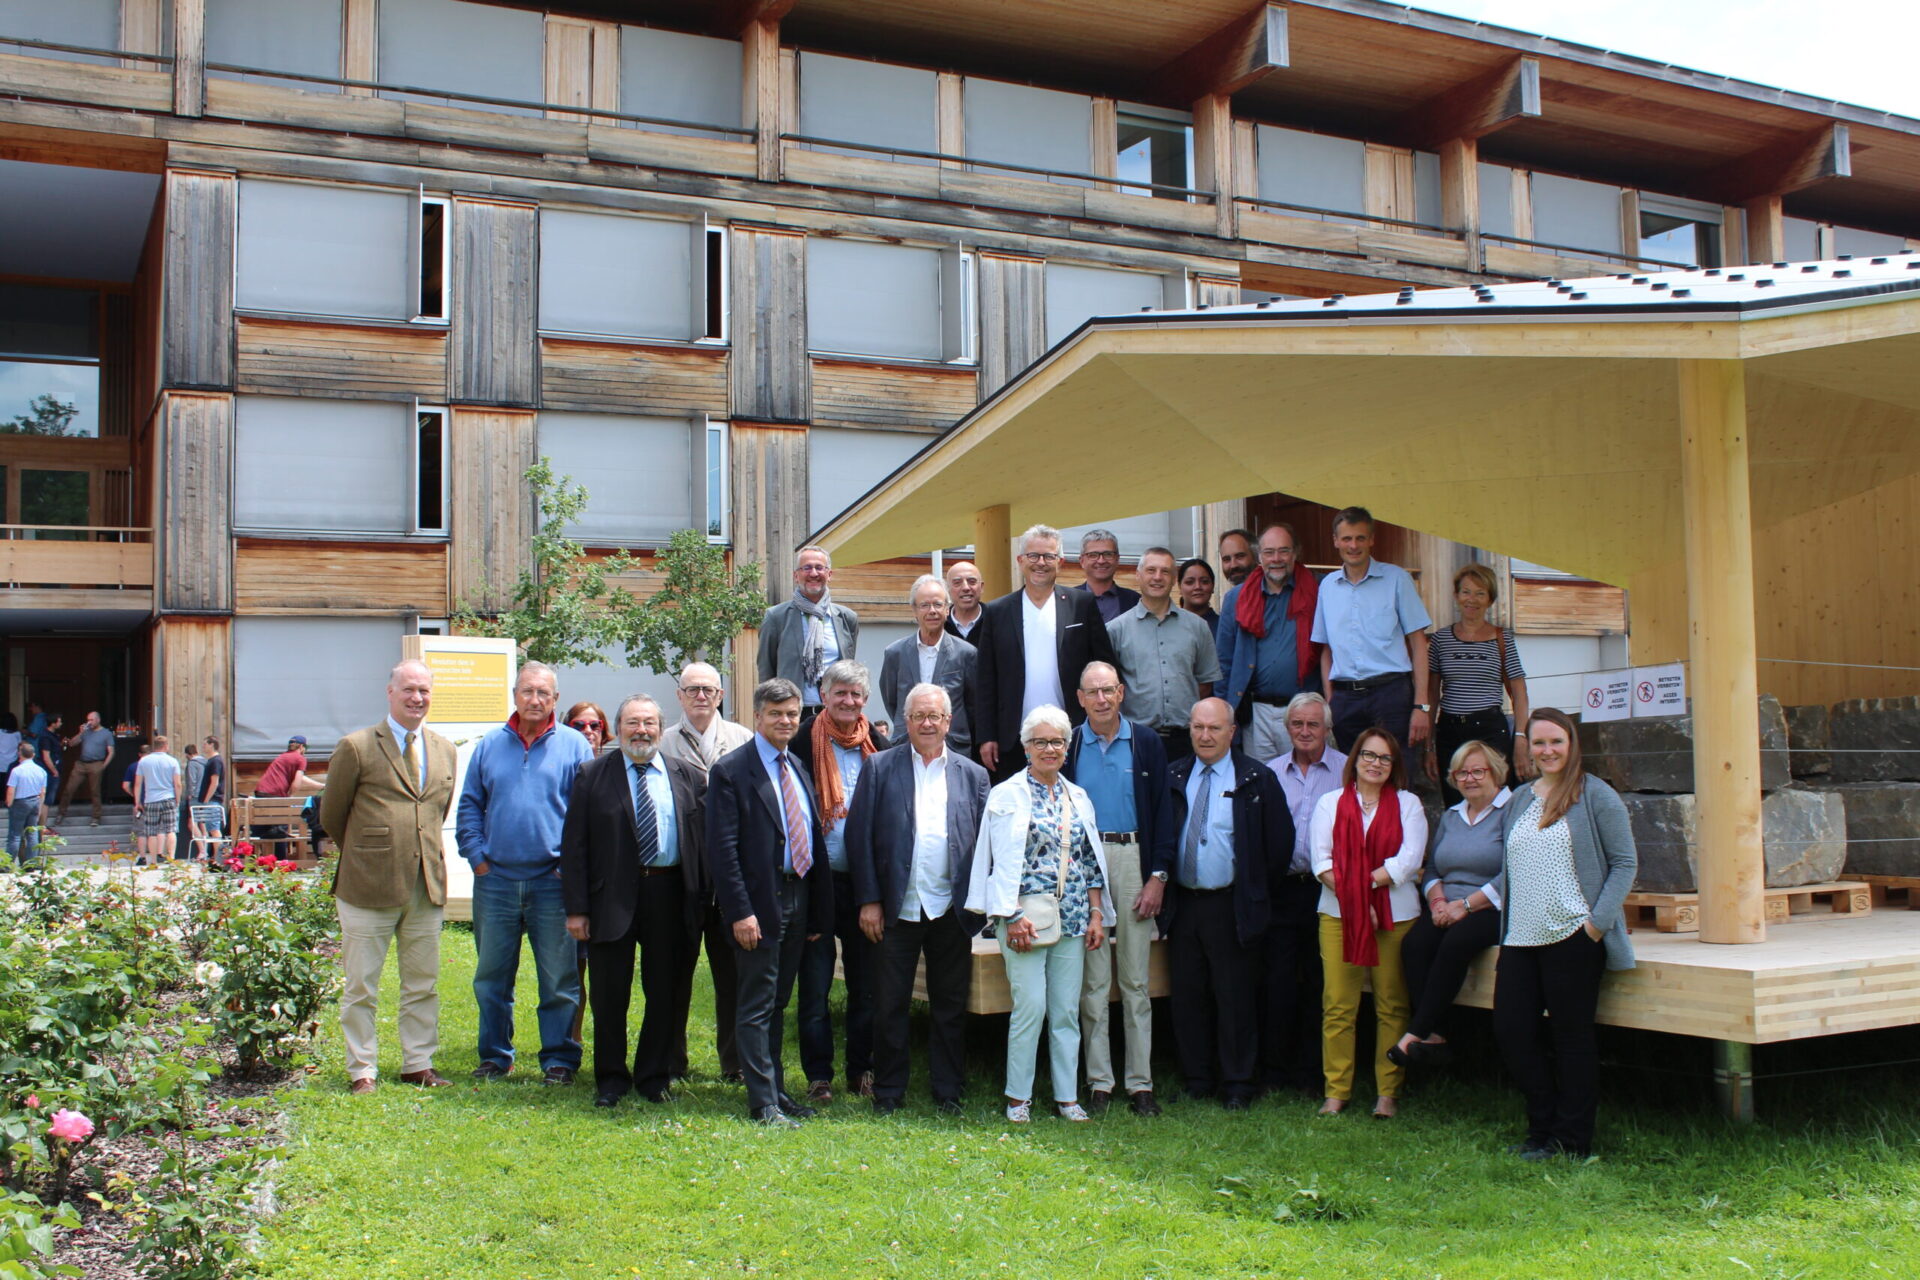 Photo de groupe à l'La Convention de le Société de Experts Bois 2018 s'est tenue le 15 et 16 juin dernier à la Haute Ecole Spécialisée Bernoise à Bienne en Suisse sur le Thème de la Construction Bois.